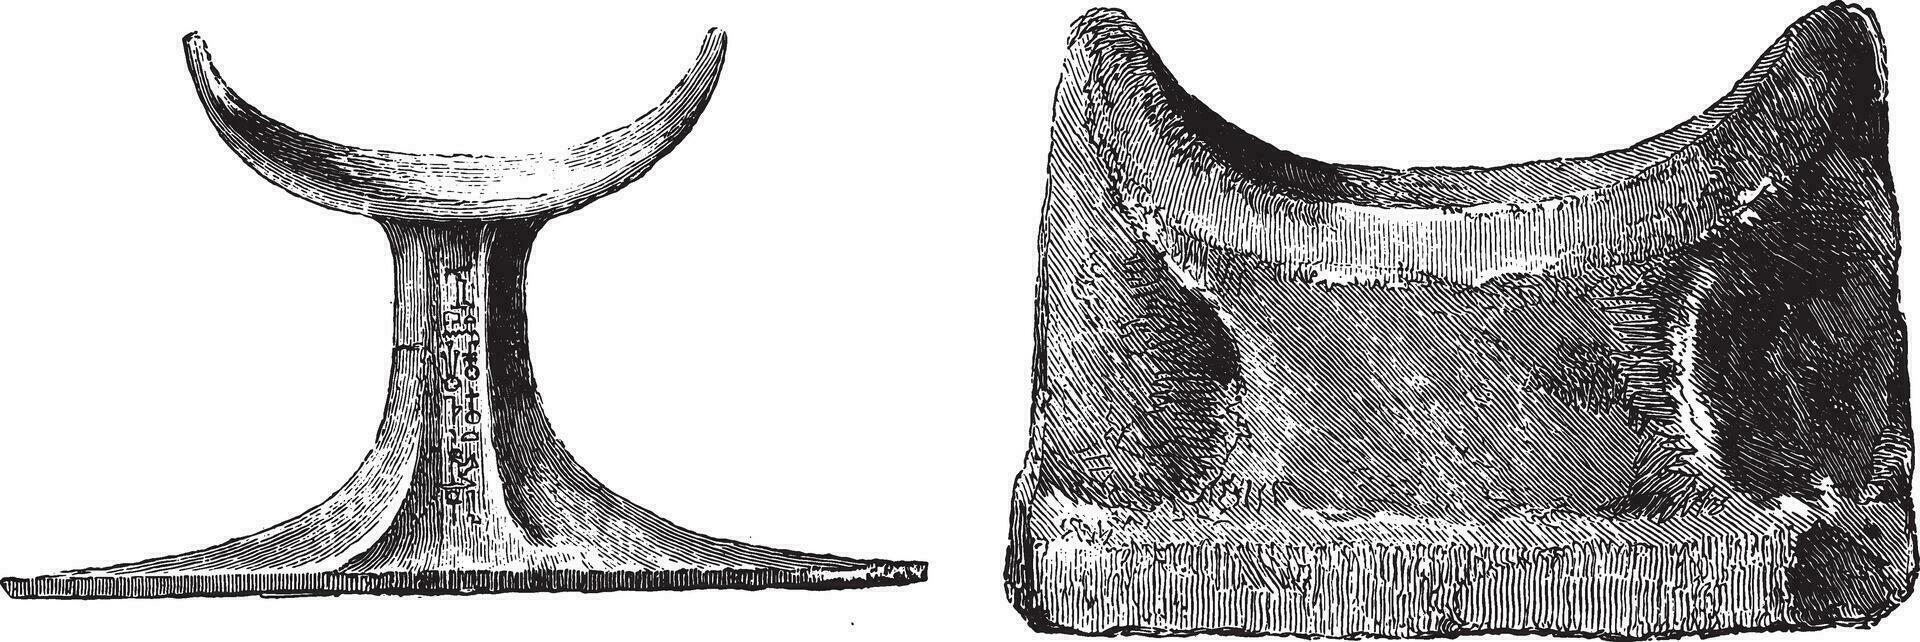 Egyptische kussens in ivoor, steen en hout, bewaard gebleven in de louvre, wijnoogst gravure. vector